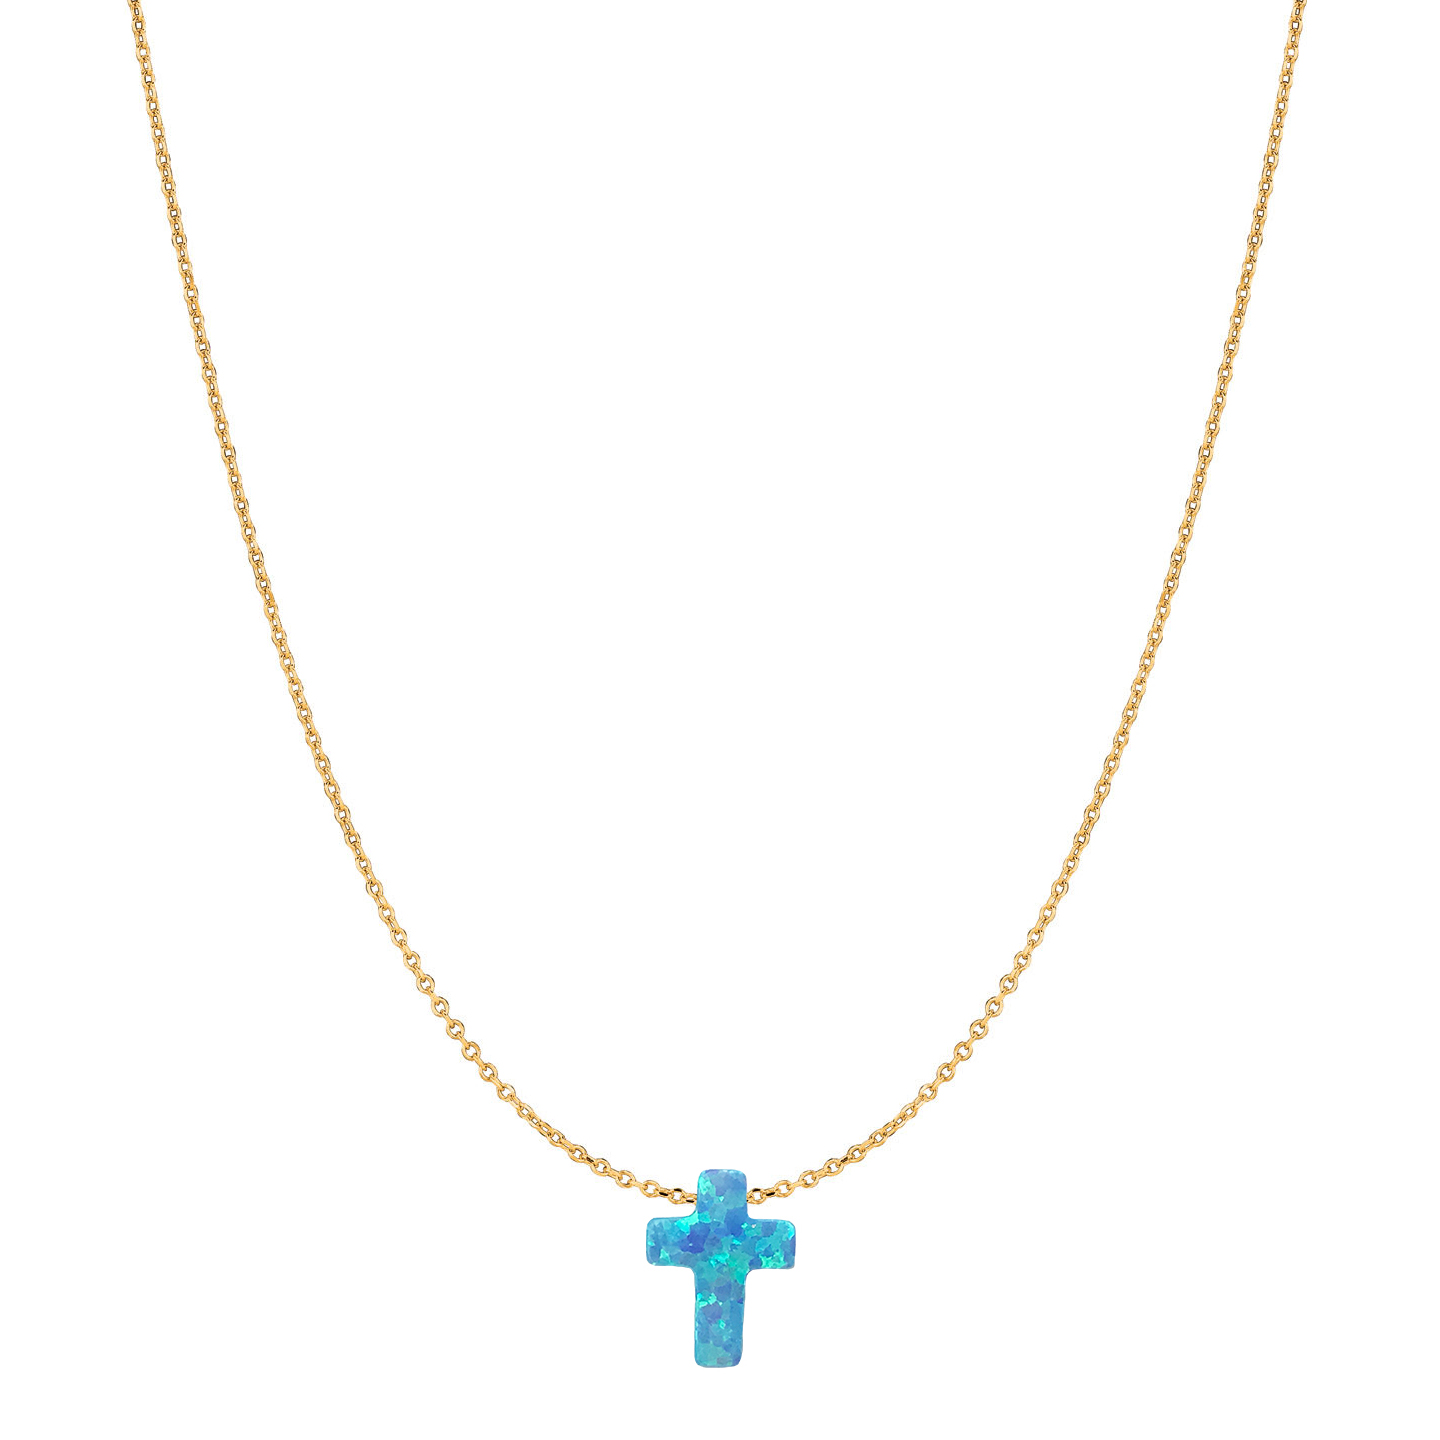 Cross jewelry Cross necklace Blue cross necklace Cross pendant Opal cross necklace Sieraden Kettingen Bedelkettingen Cross necklace women 